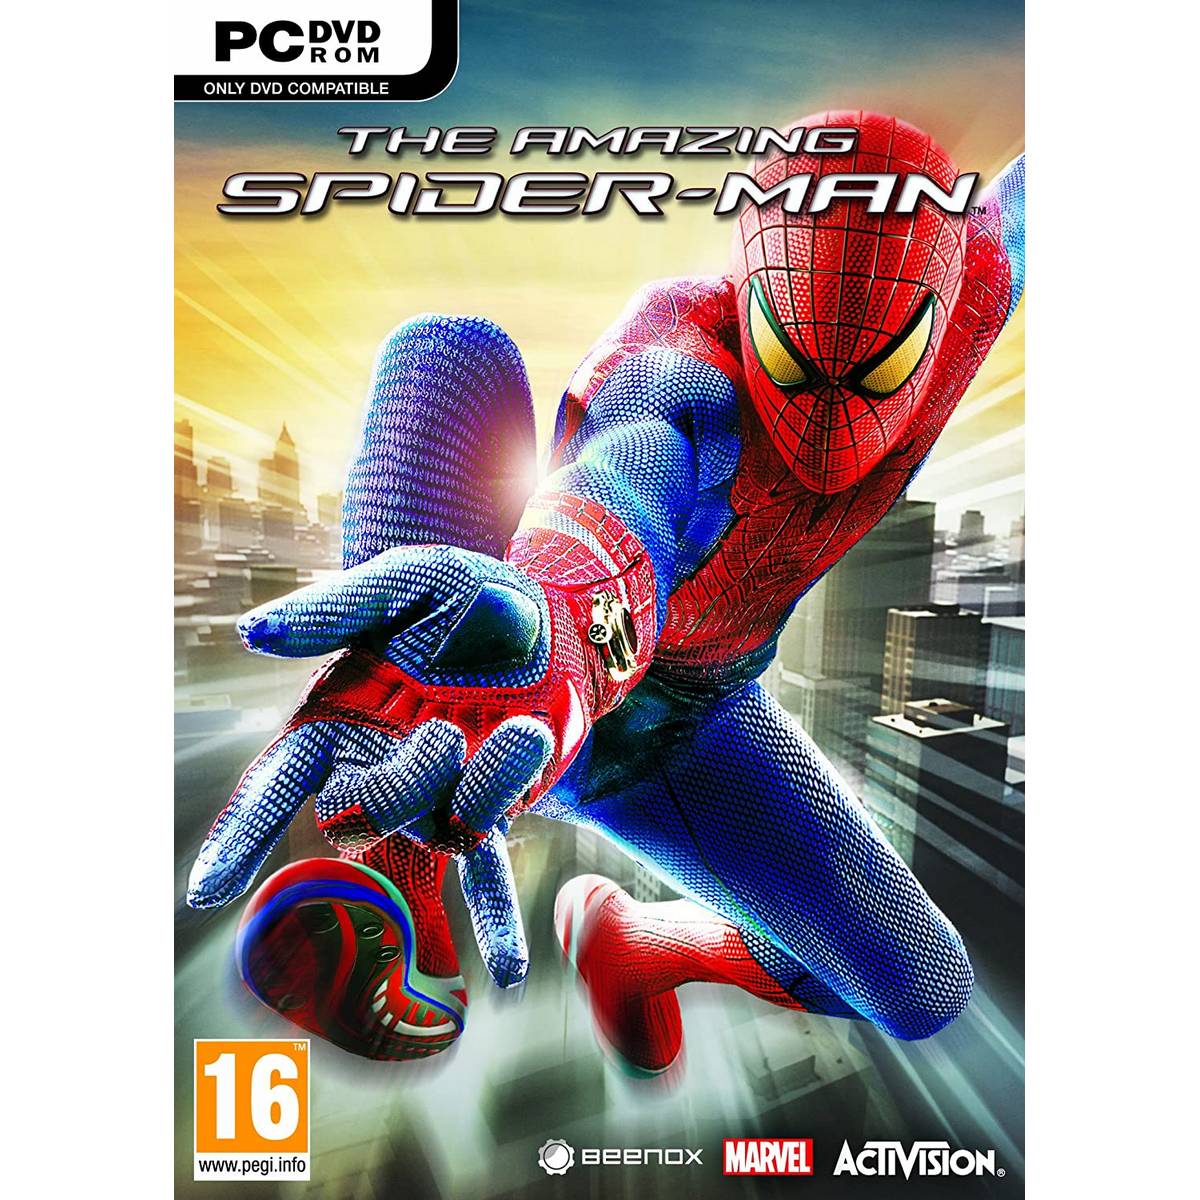 The Amazing Spider-Man PC Download Gratis Ita + Torrent